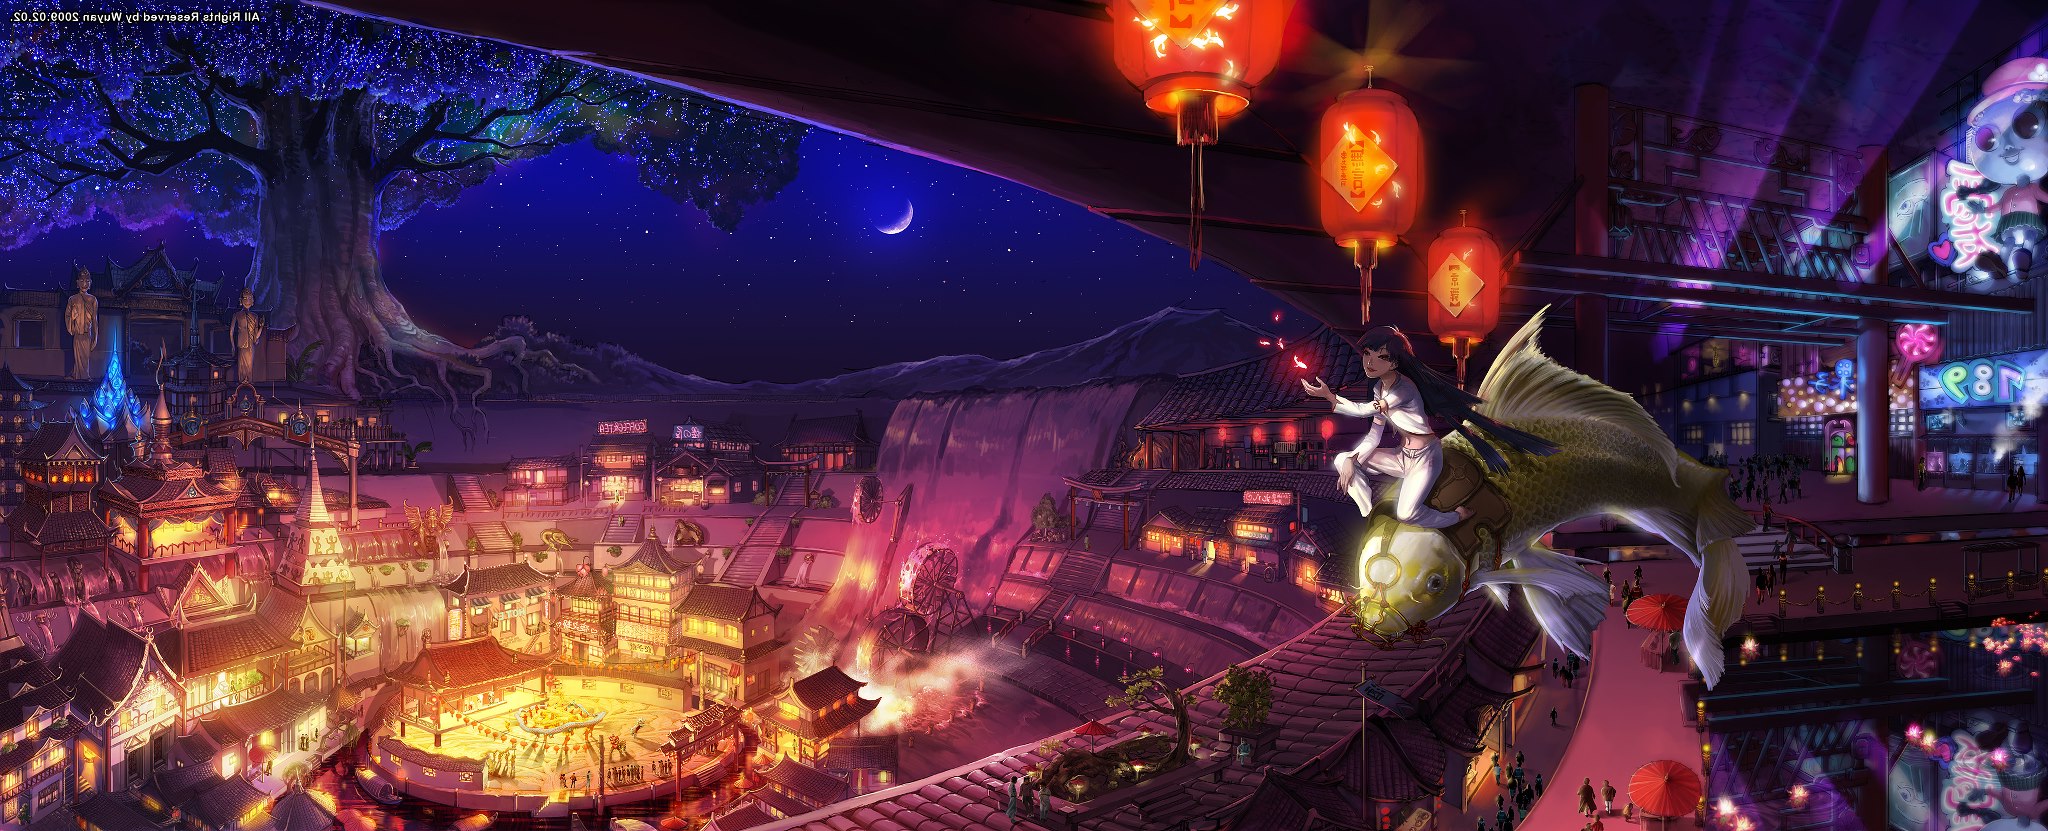 China, Asia, Fish, Fantasy Art Wallpaper